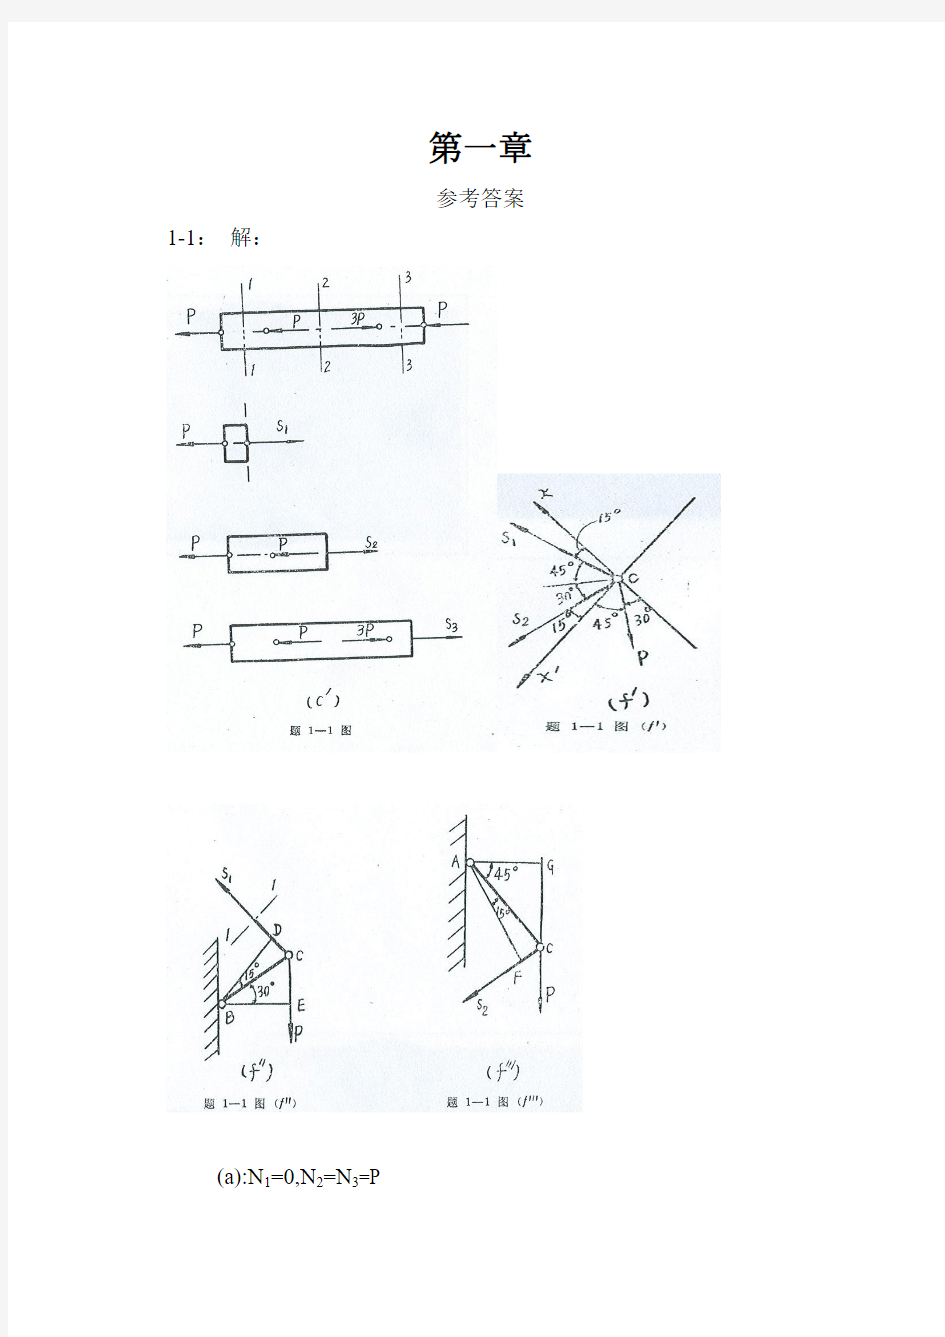 工程力学--材料力学(北京科大、东北大学版)第4版第一章习题答案